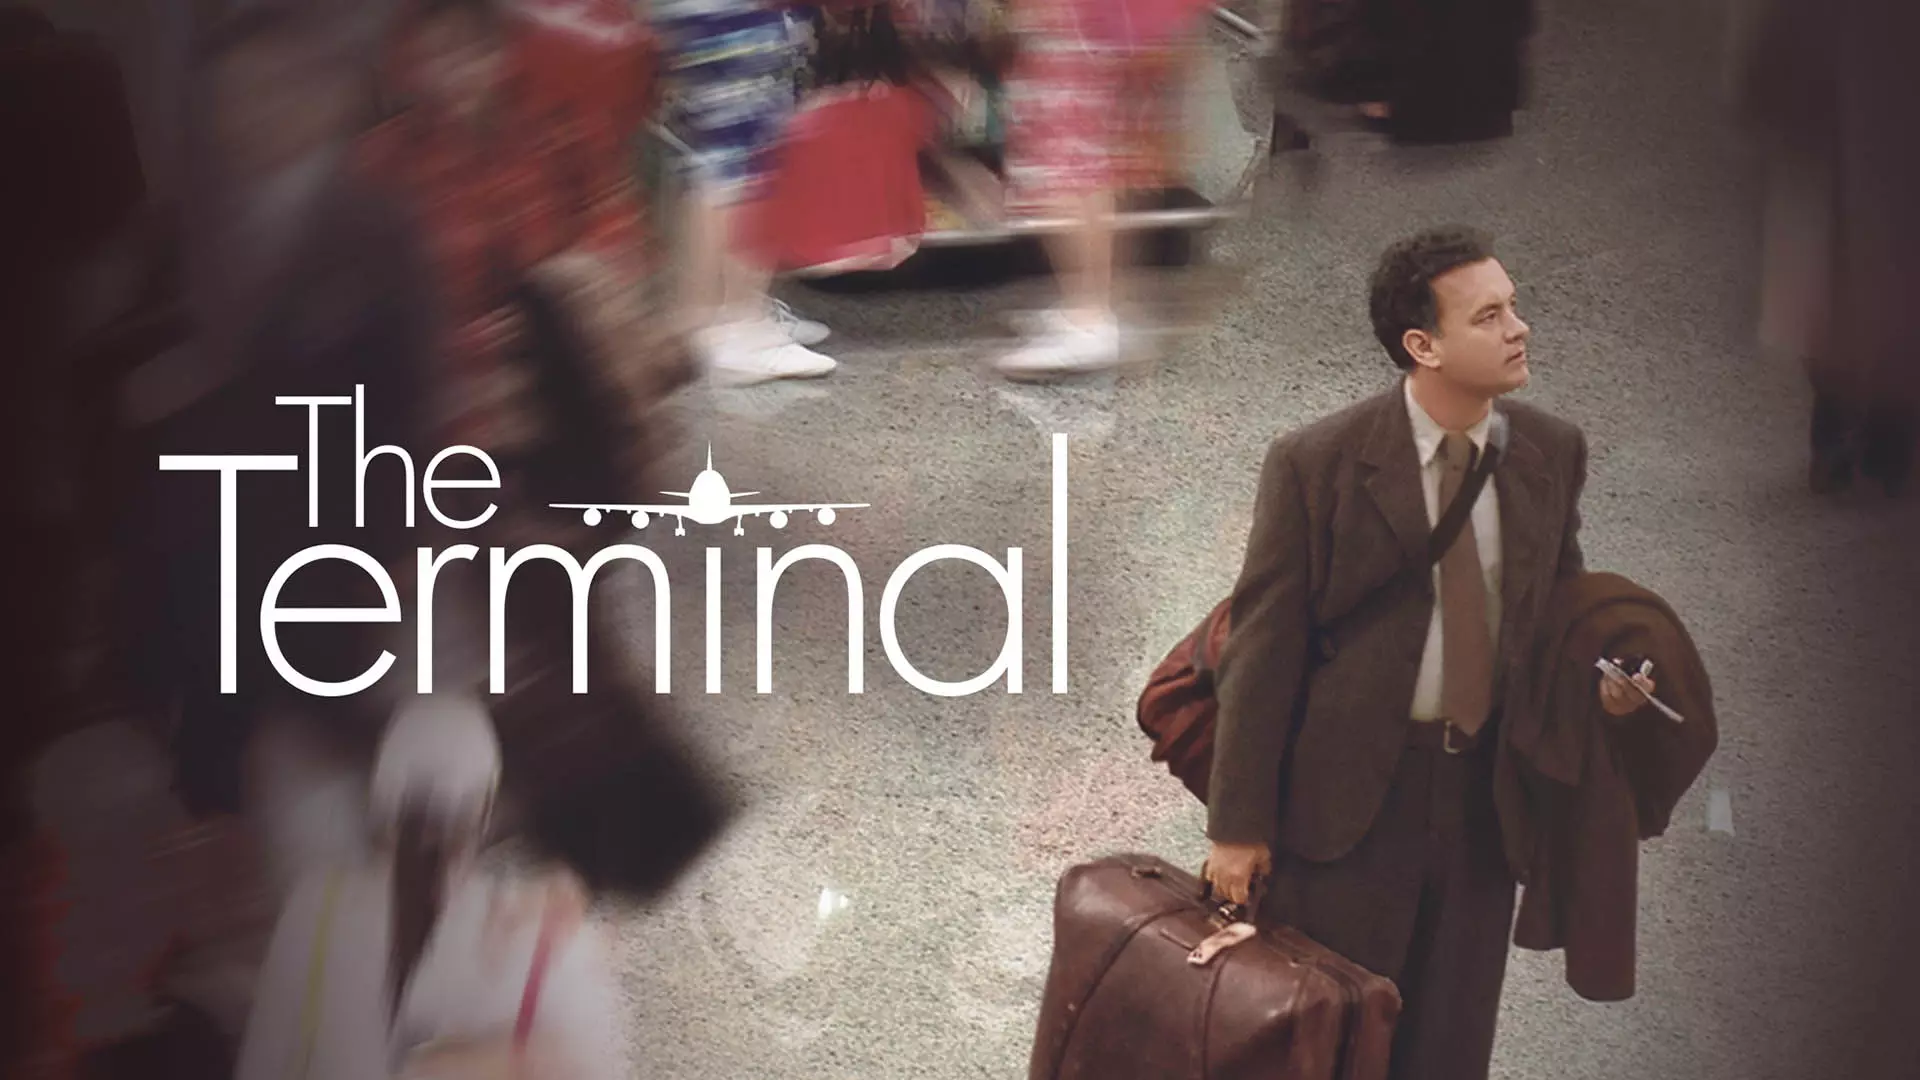 کاور سینمایی فیلم The Terminal با حضور تام هنکس